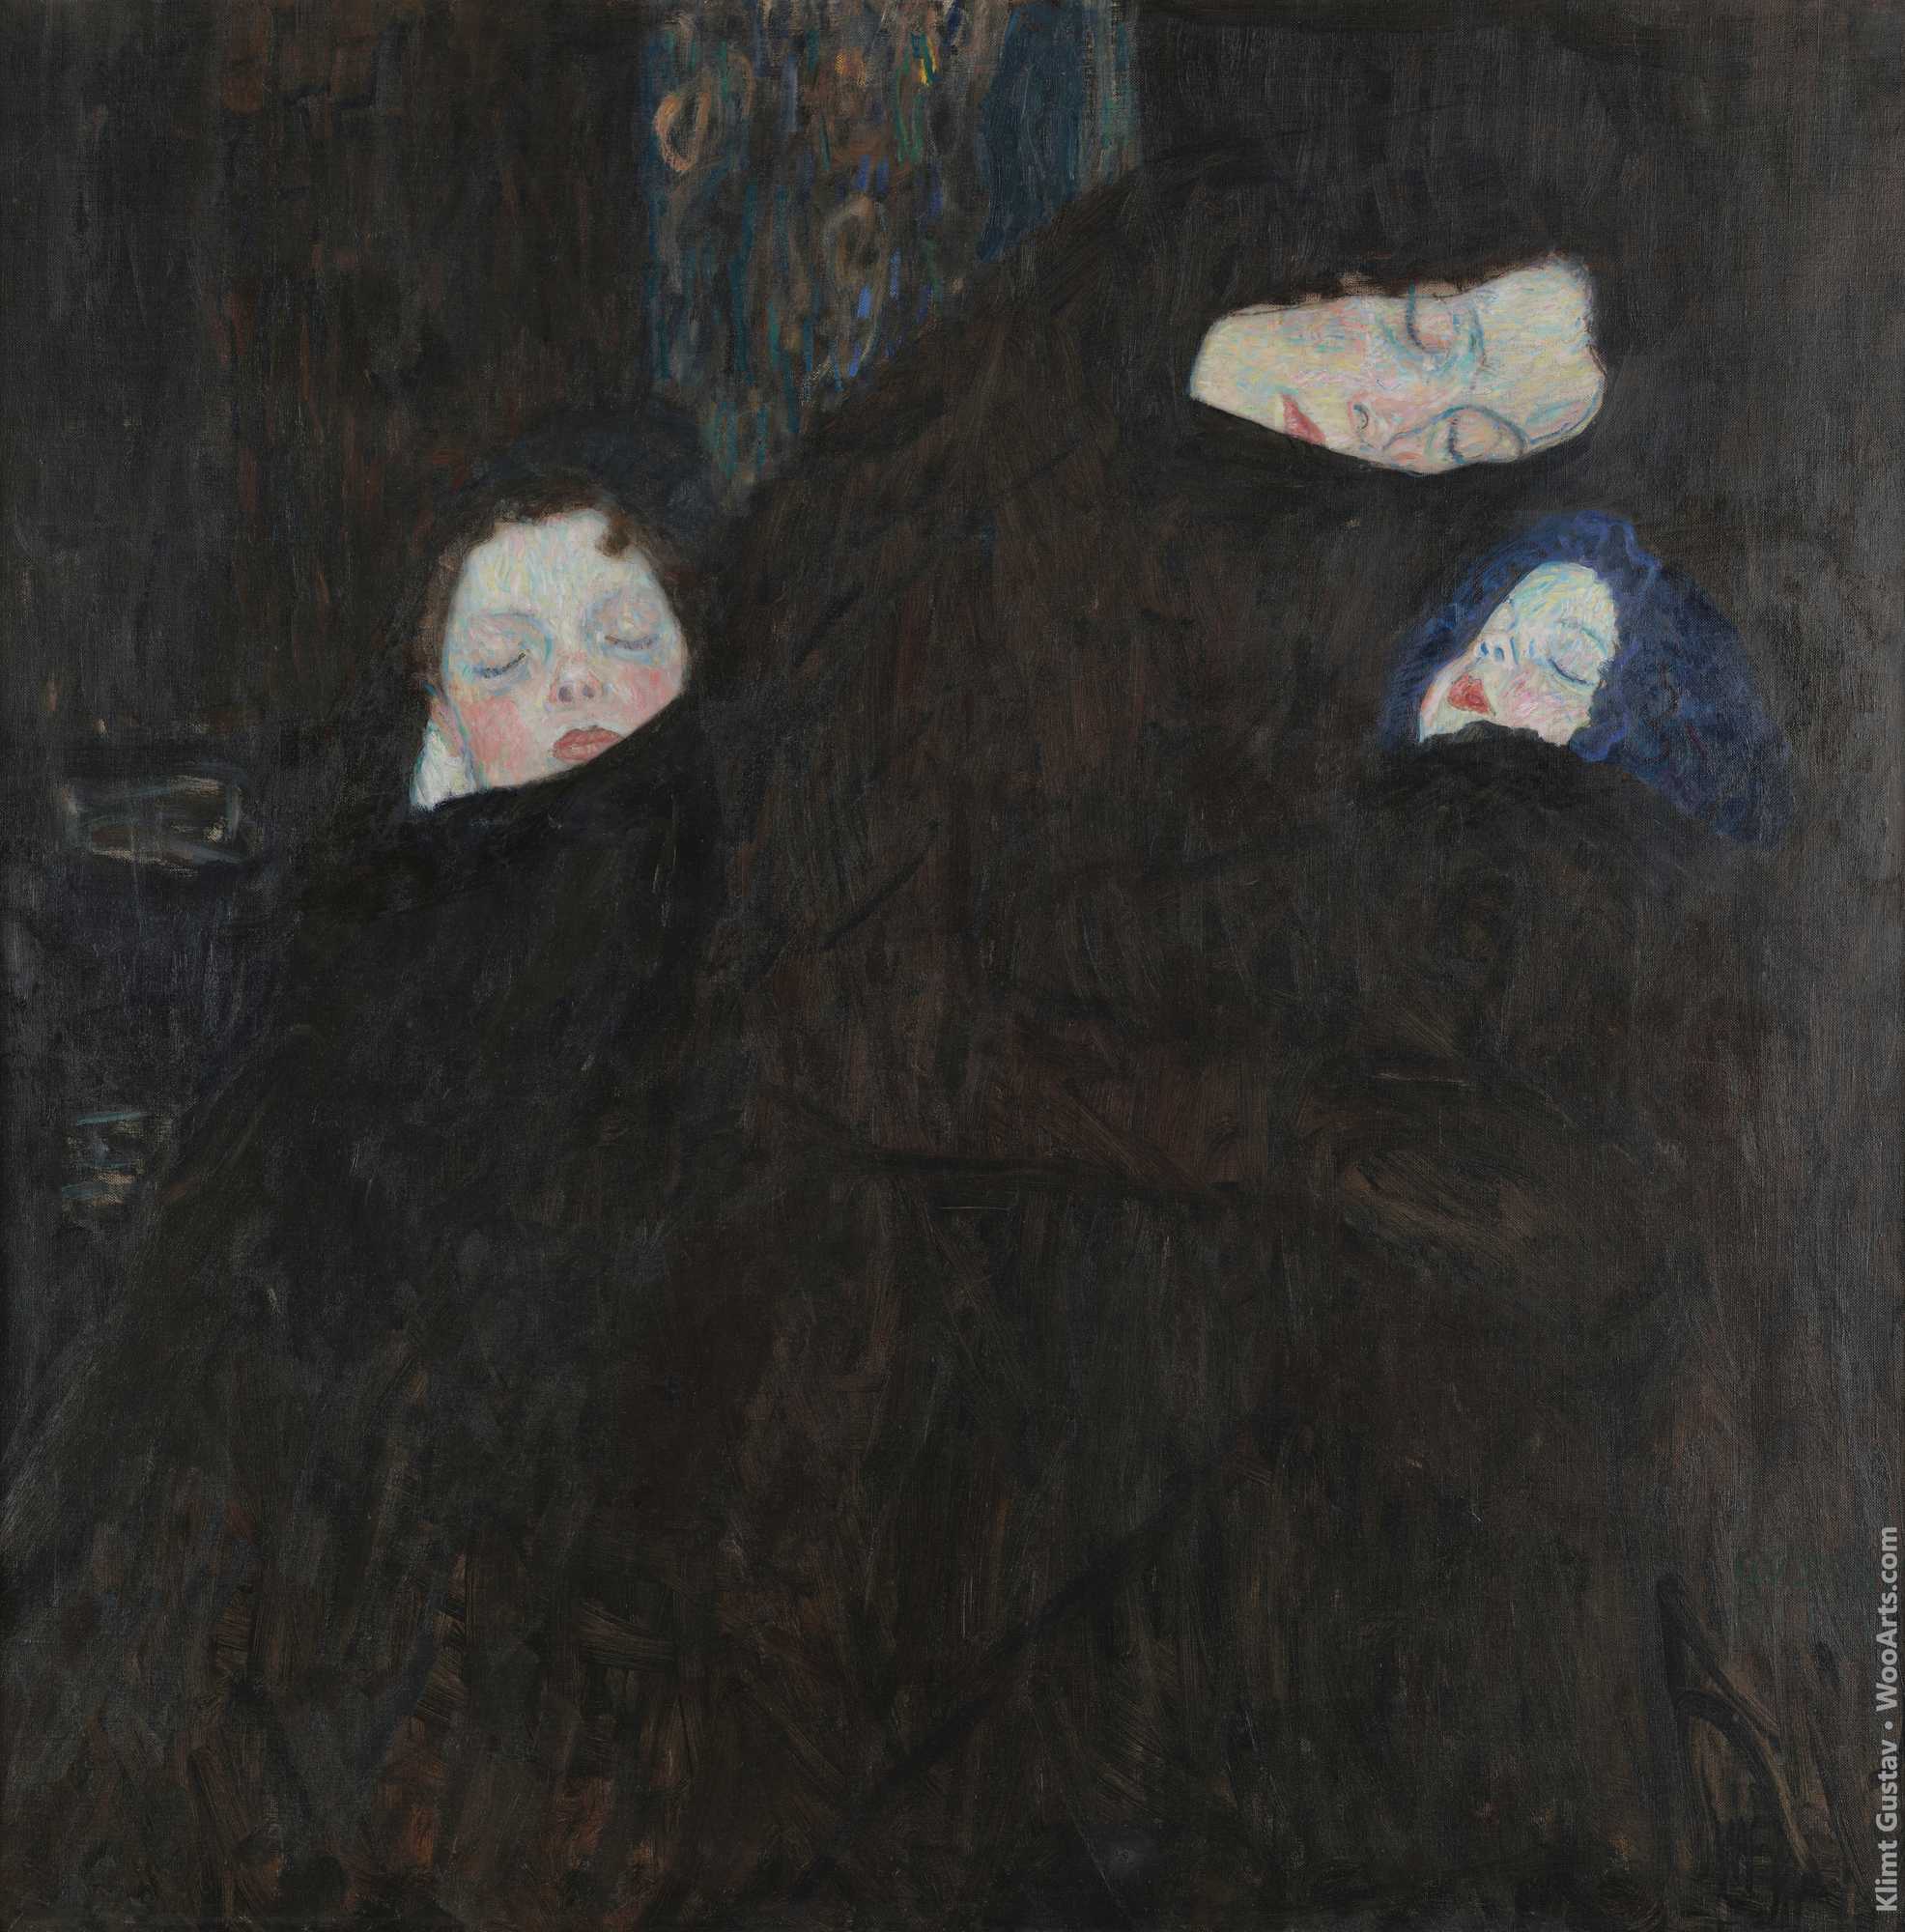 Mother with Two Children (Family) Gustav Klimt 1909-1910